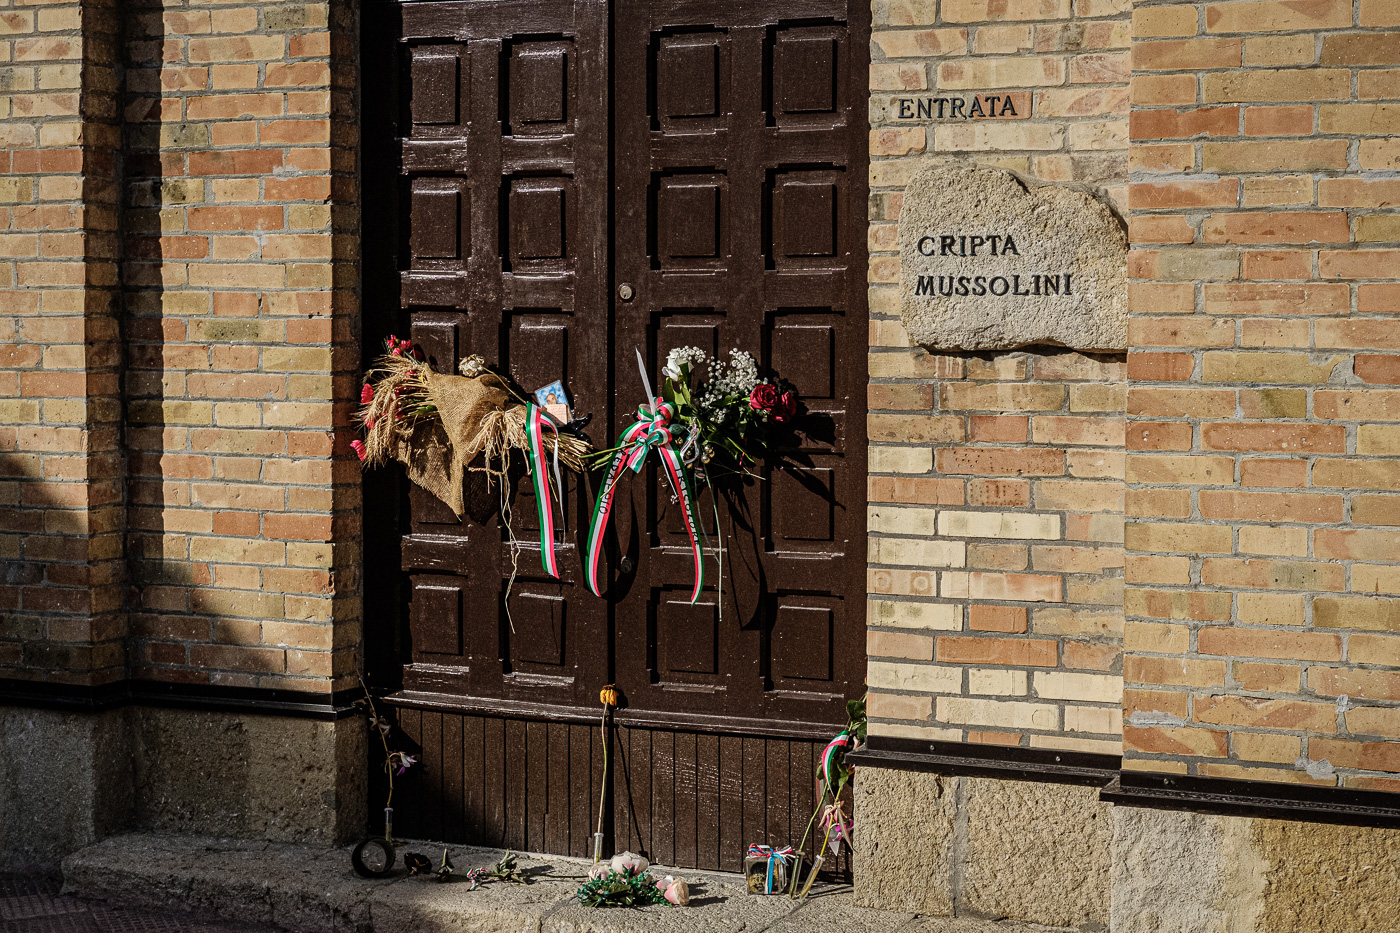 Endrada a la cripta de la família Mussolini al cementiri de Predappio